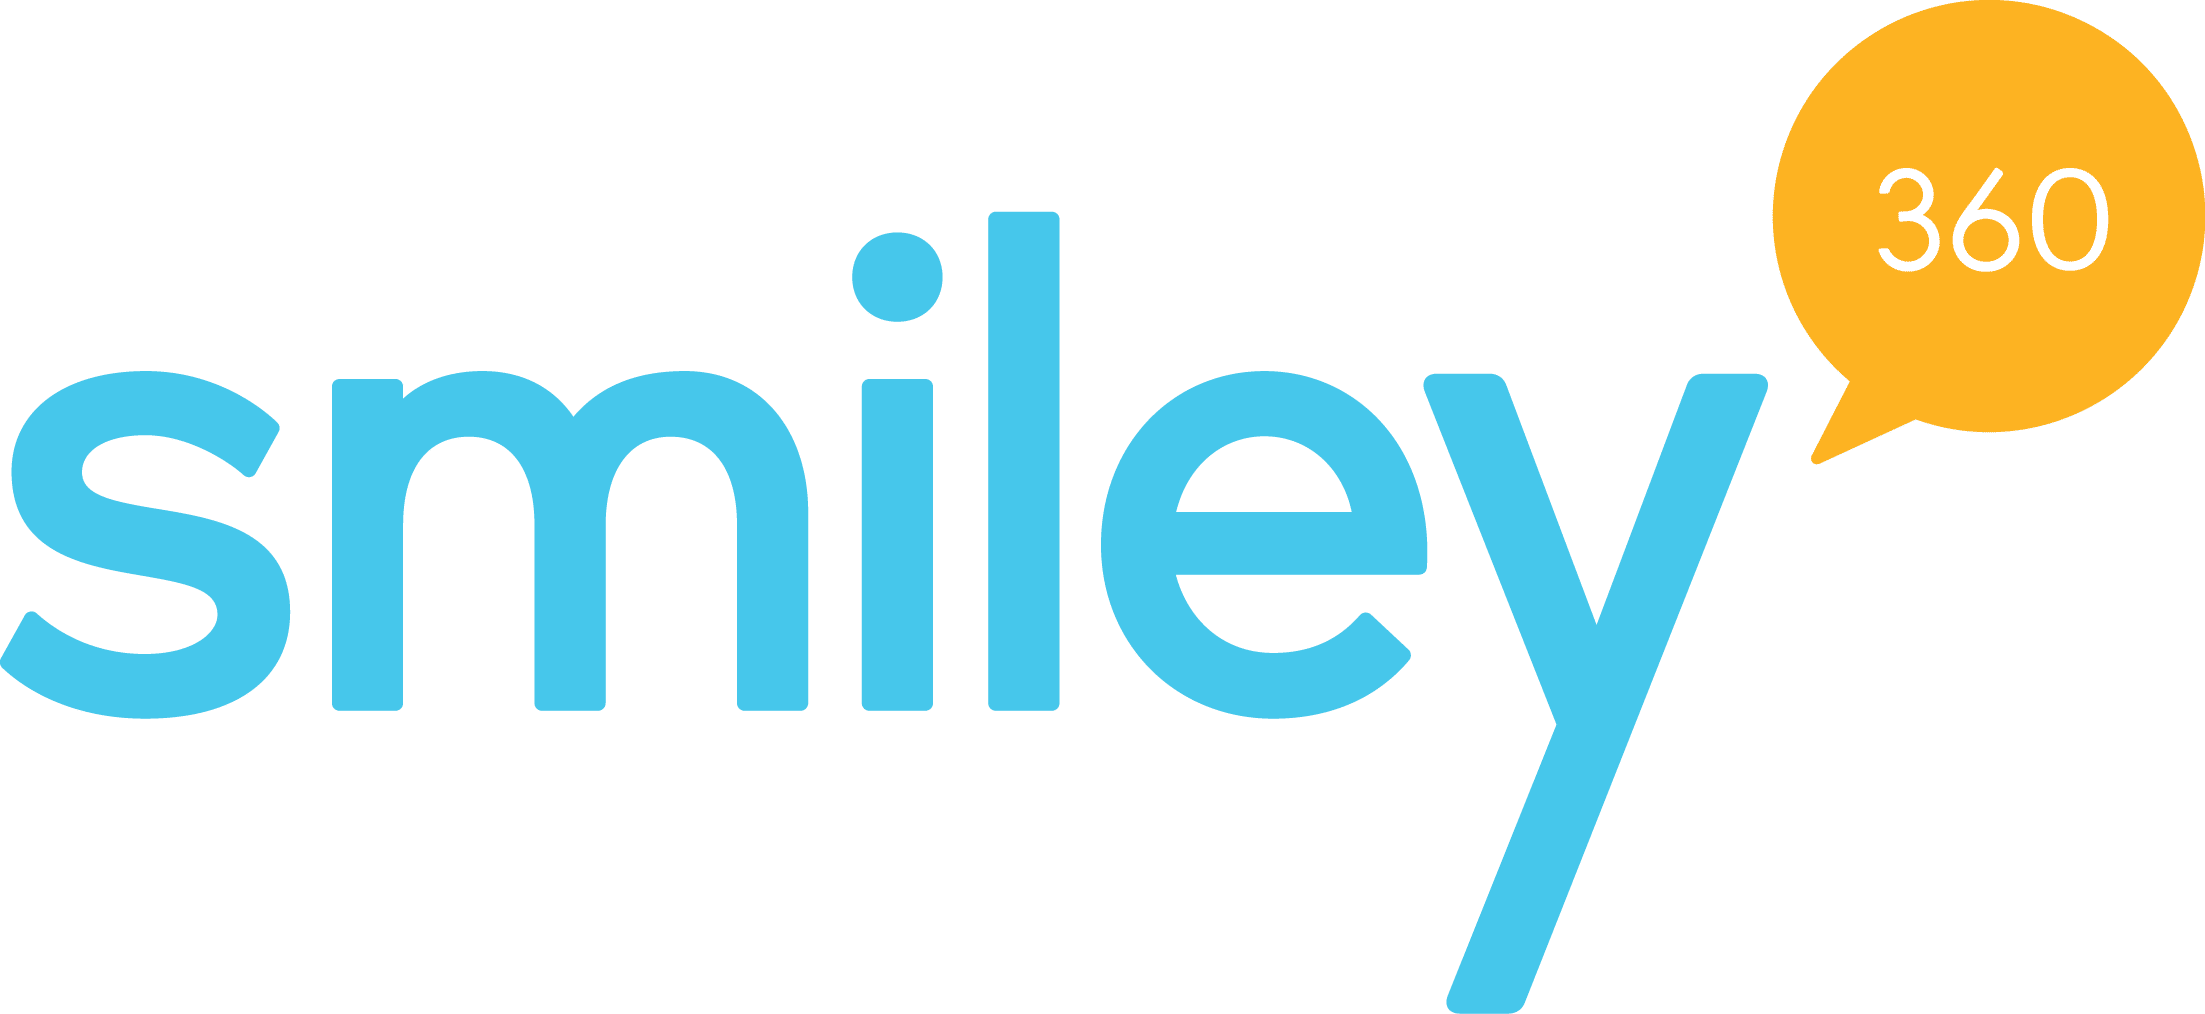 Smiley 360 logo